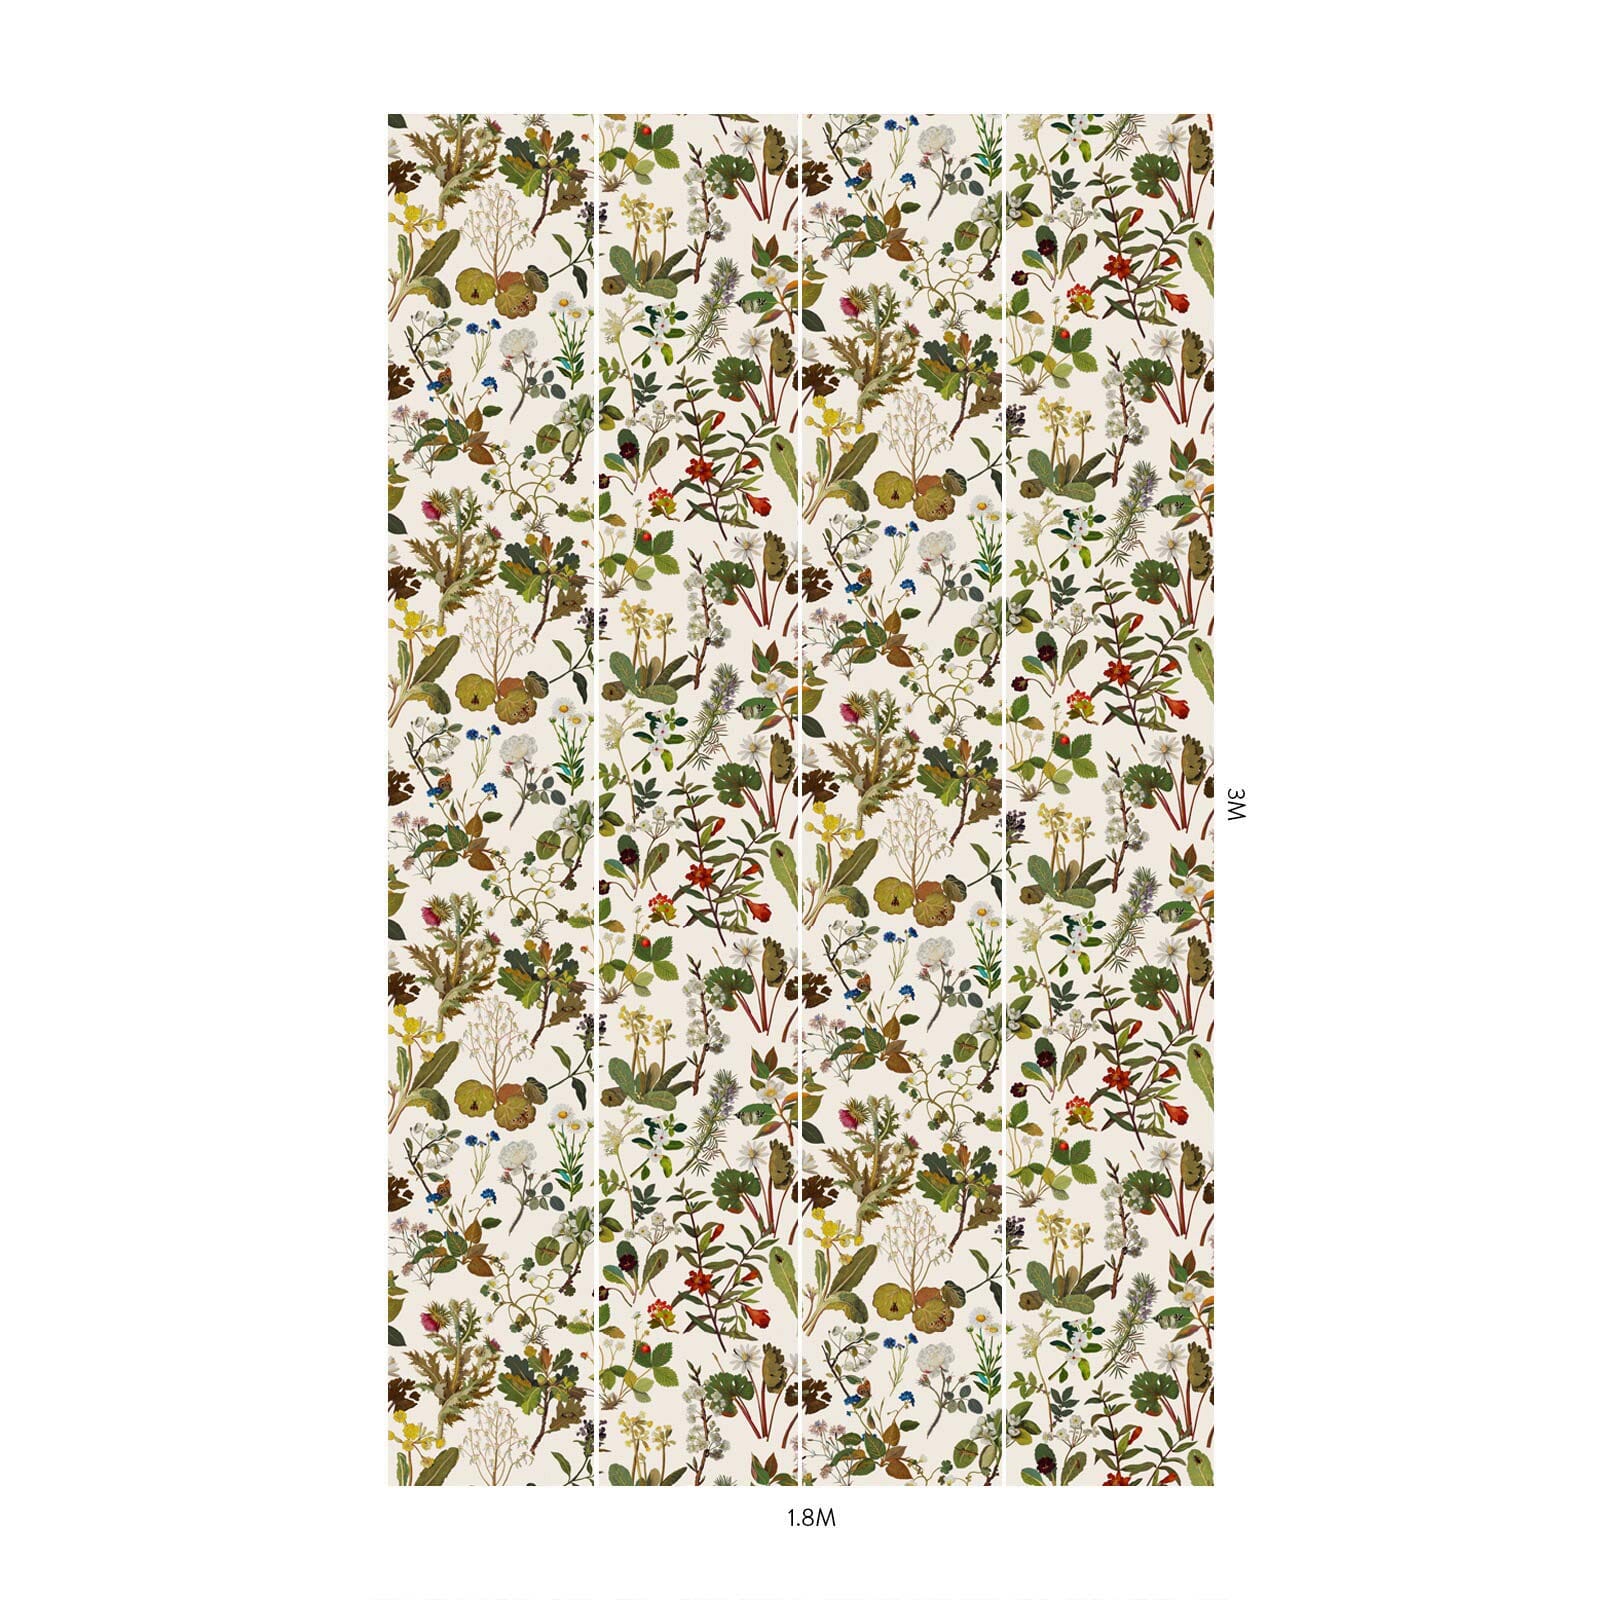 L'art imite la Nature à travers HERBARIUM : notre réimagination des exquises mosaïques florales de Mary Delany. L'artiste anglaise du XVIIIe siècle a commencé à réaliser sa série de 985 collages extraordinairement détaillés à l'âge de 72 ans.